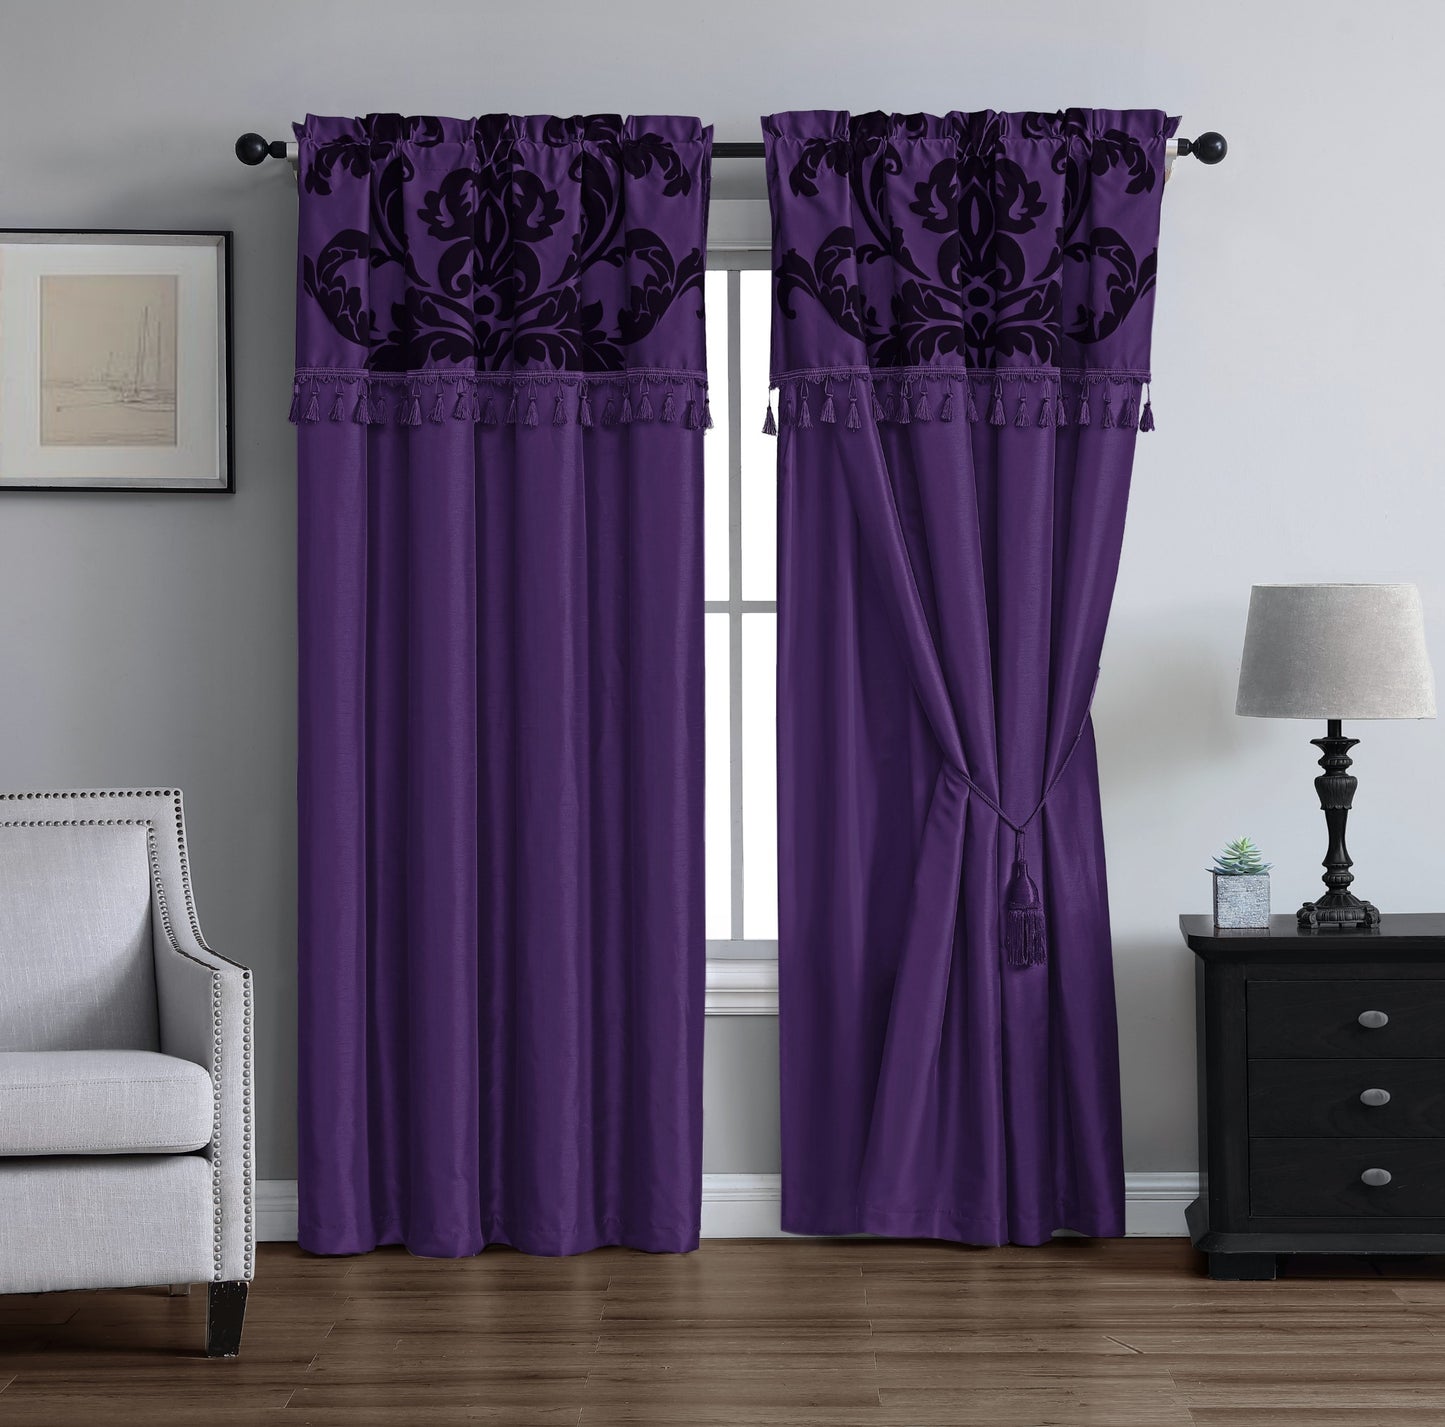 Royale 4-piece Floral Jacquard Window Curtain Set